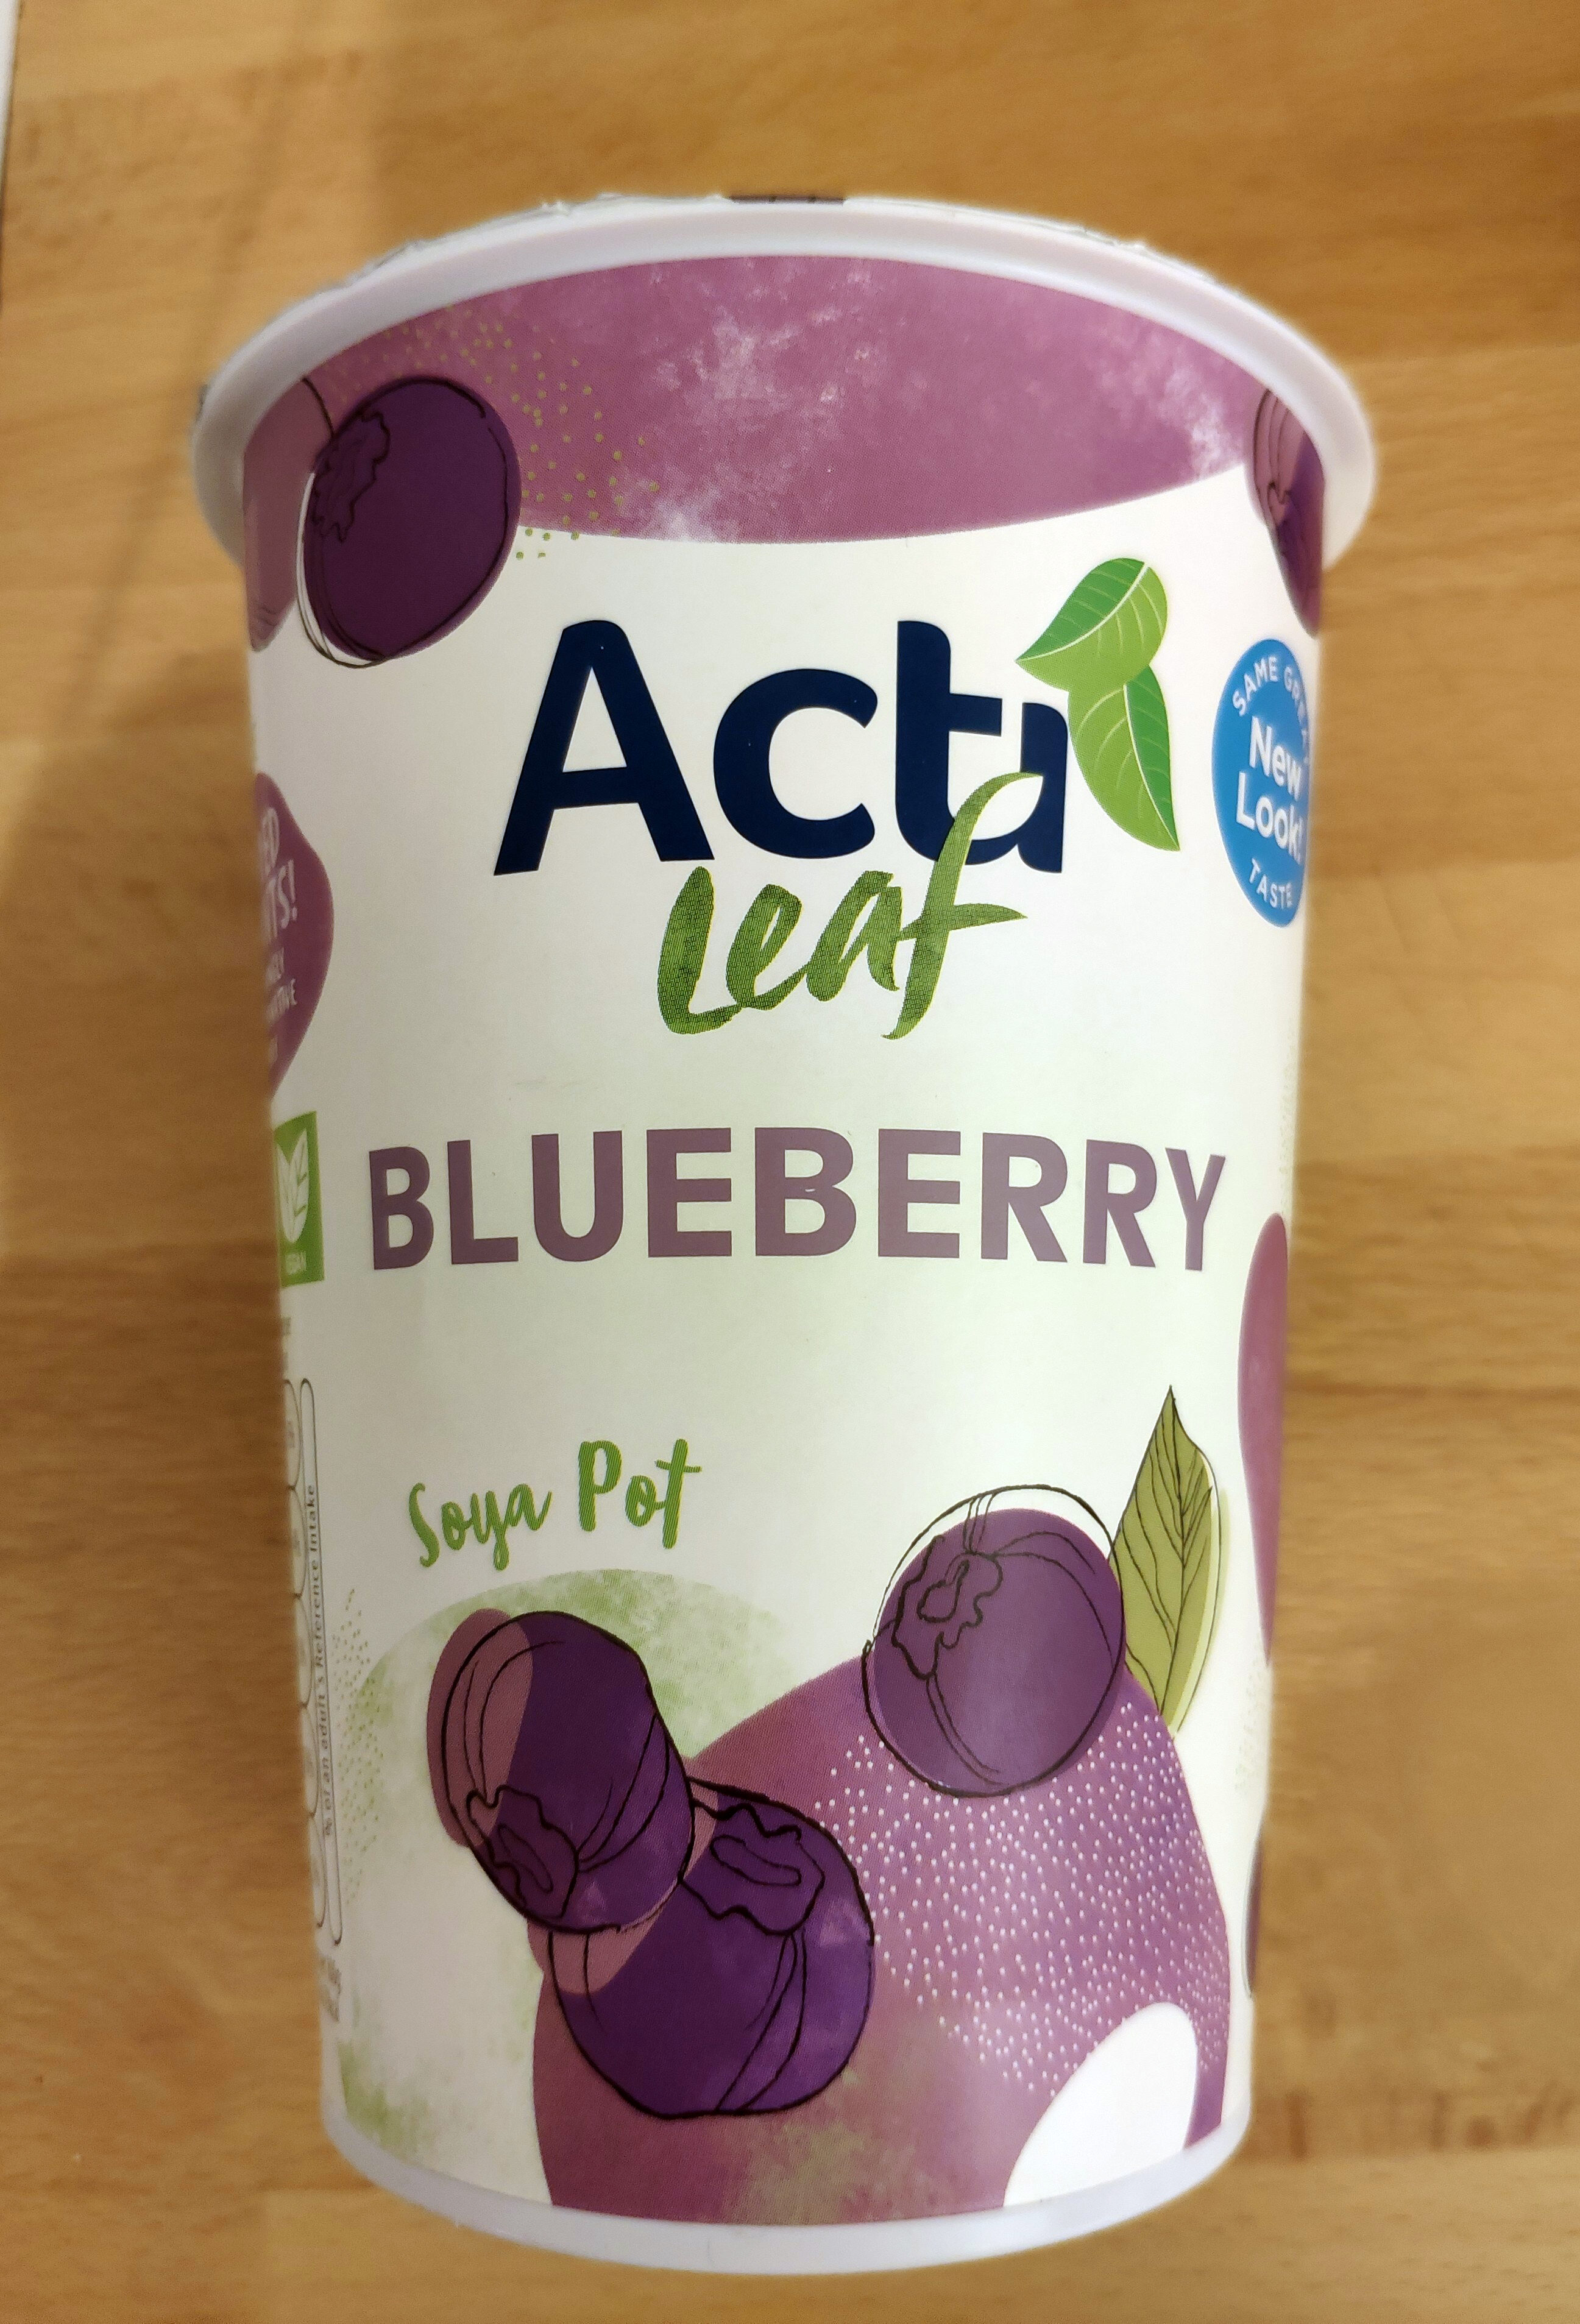 Blueberry Soya Pot - Product